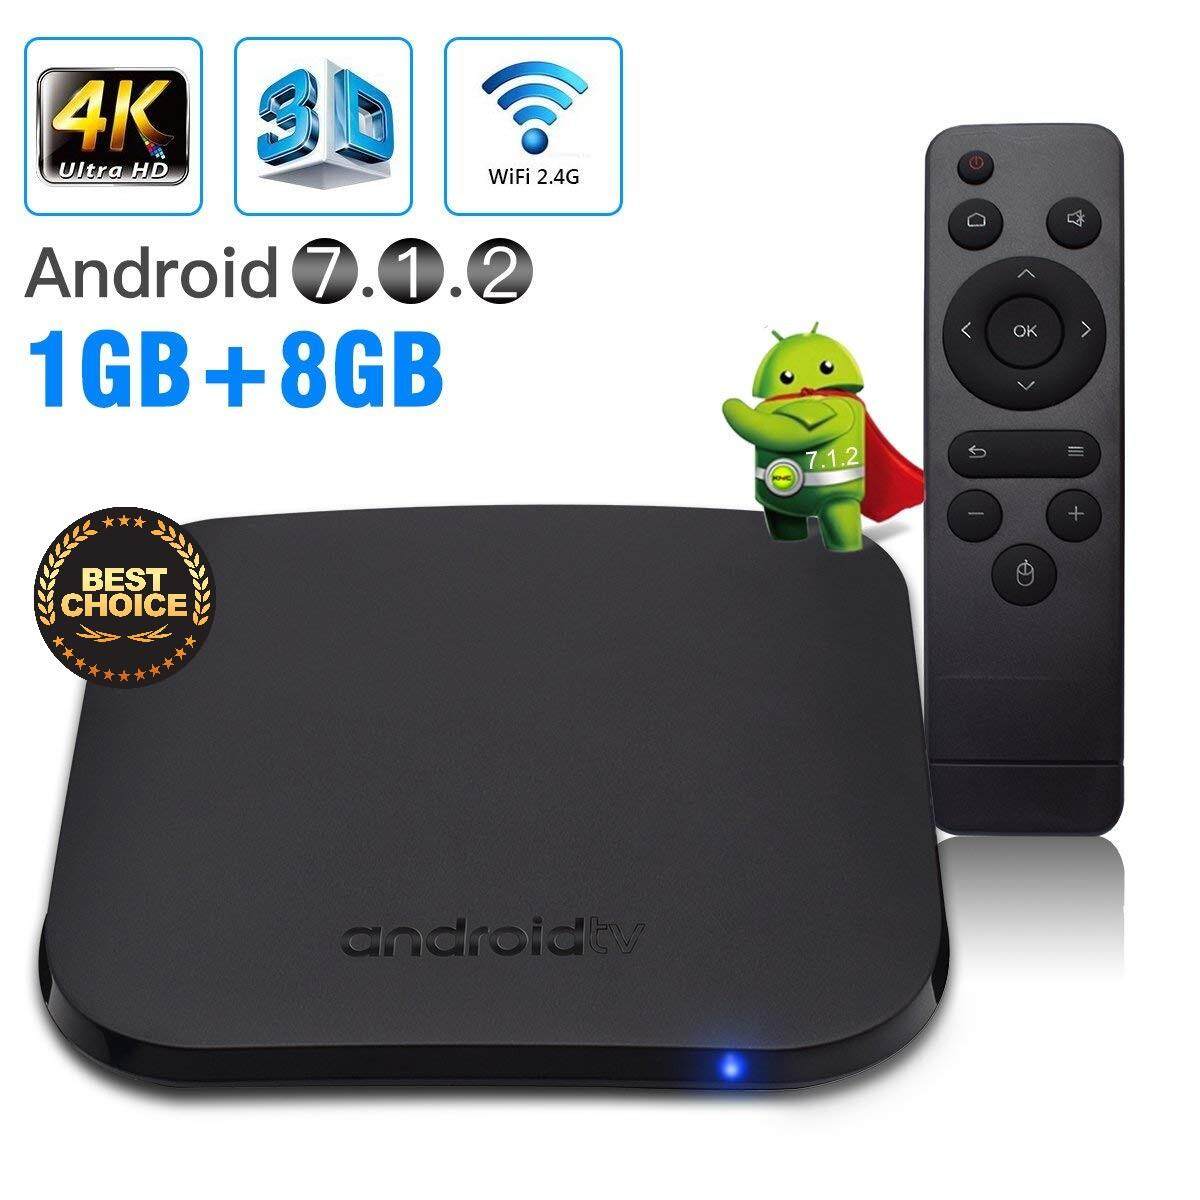 การใช้งาน  อุดรธานี กล่องดิจิตอลทีวีแอนดรอยด์ M8S PLUS W Quad-Core Nougat TV Box (Amlogic S912 CPU  RAM1GB/ROM8GB  Android 7.1)